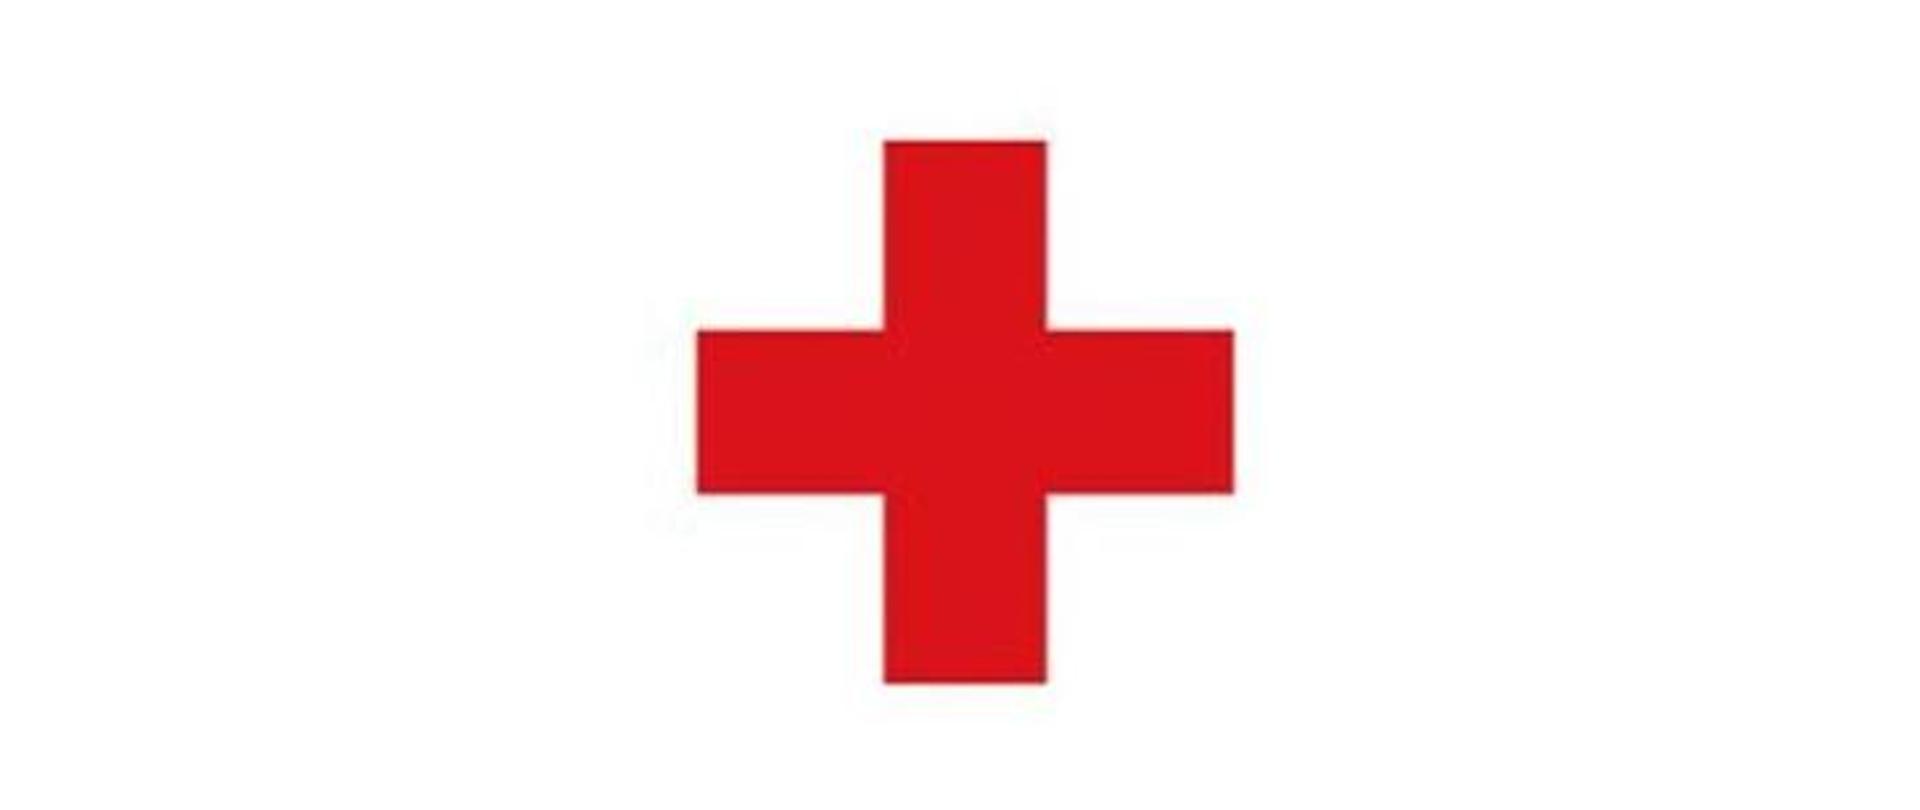 Zdjęcie przedstawia czerwony krzyż na białym tle. 